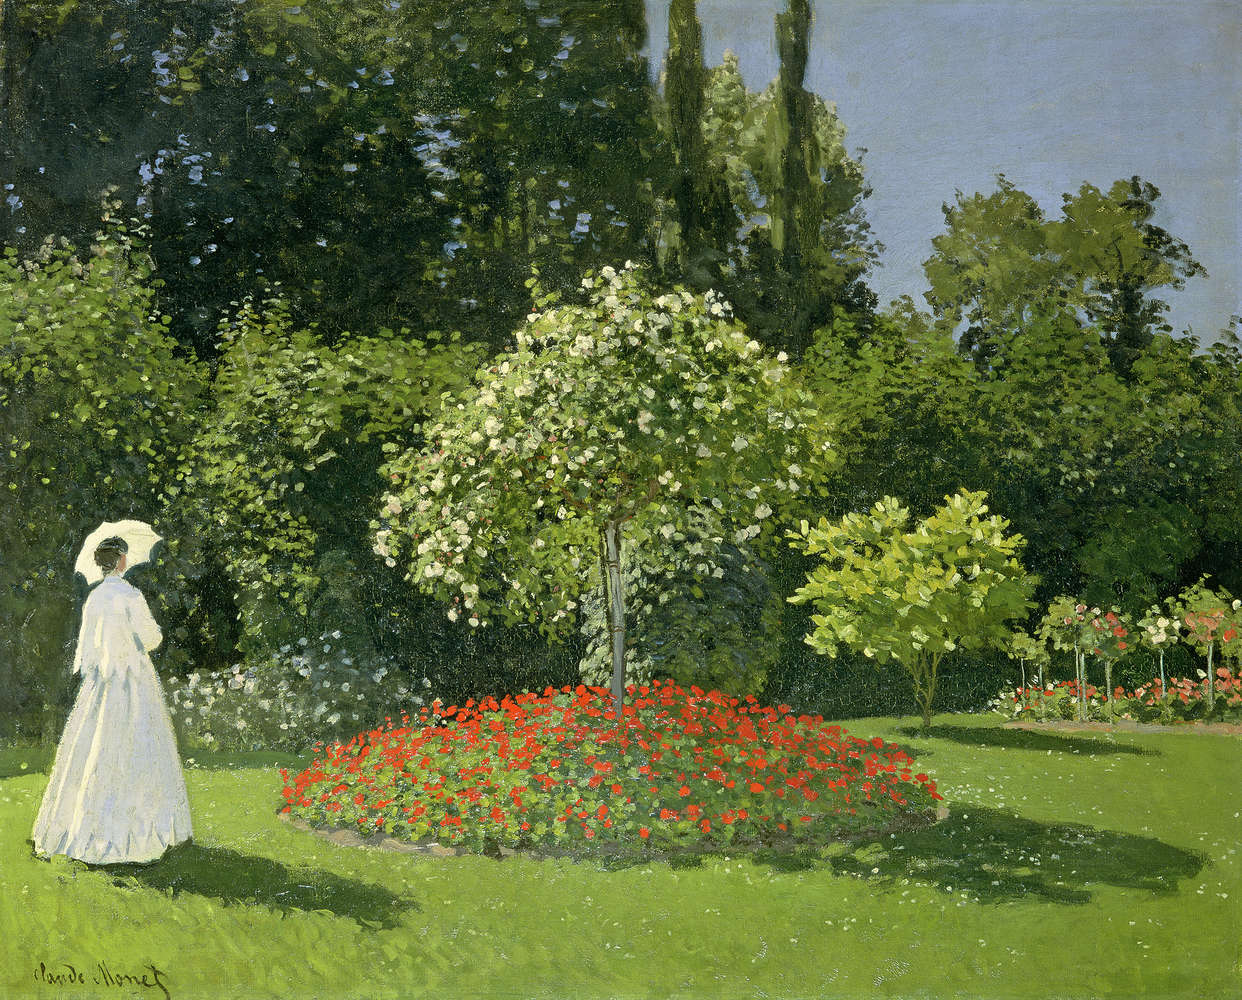             Mural "Mujer en el jardín" de Claude Monet
        